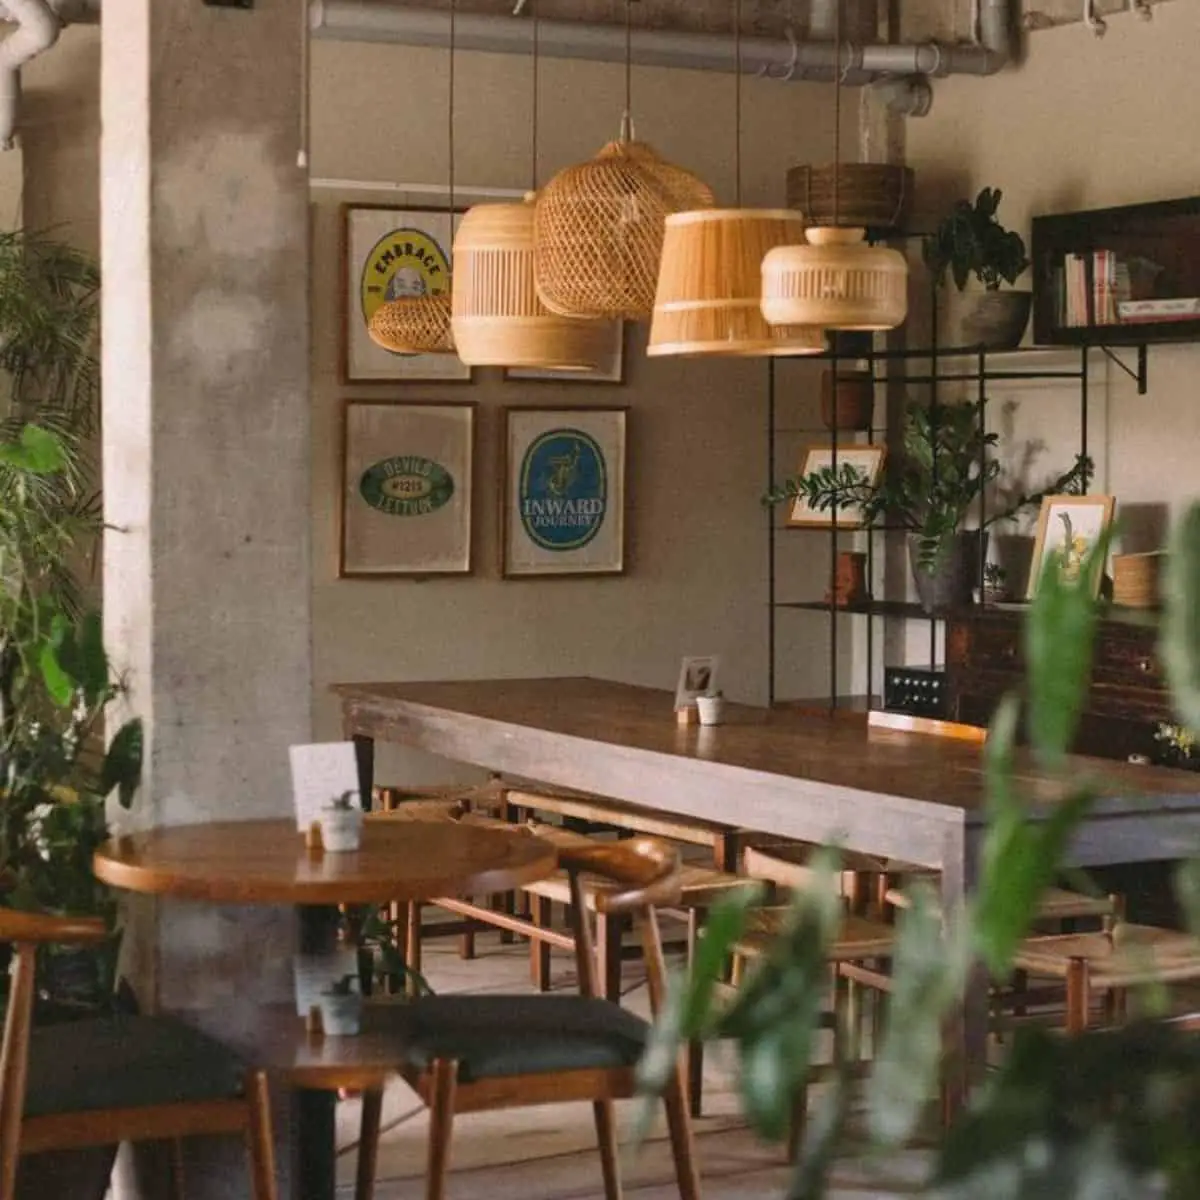 Good Mantra plant based menu cafe